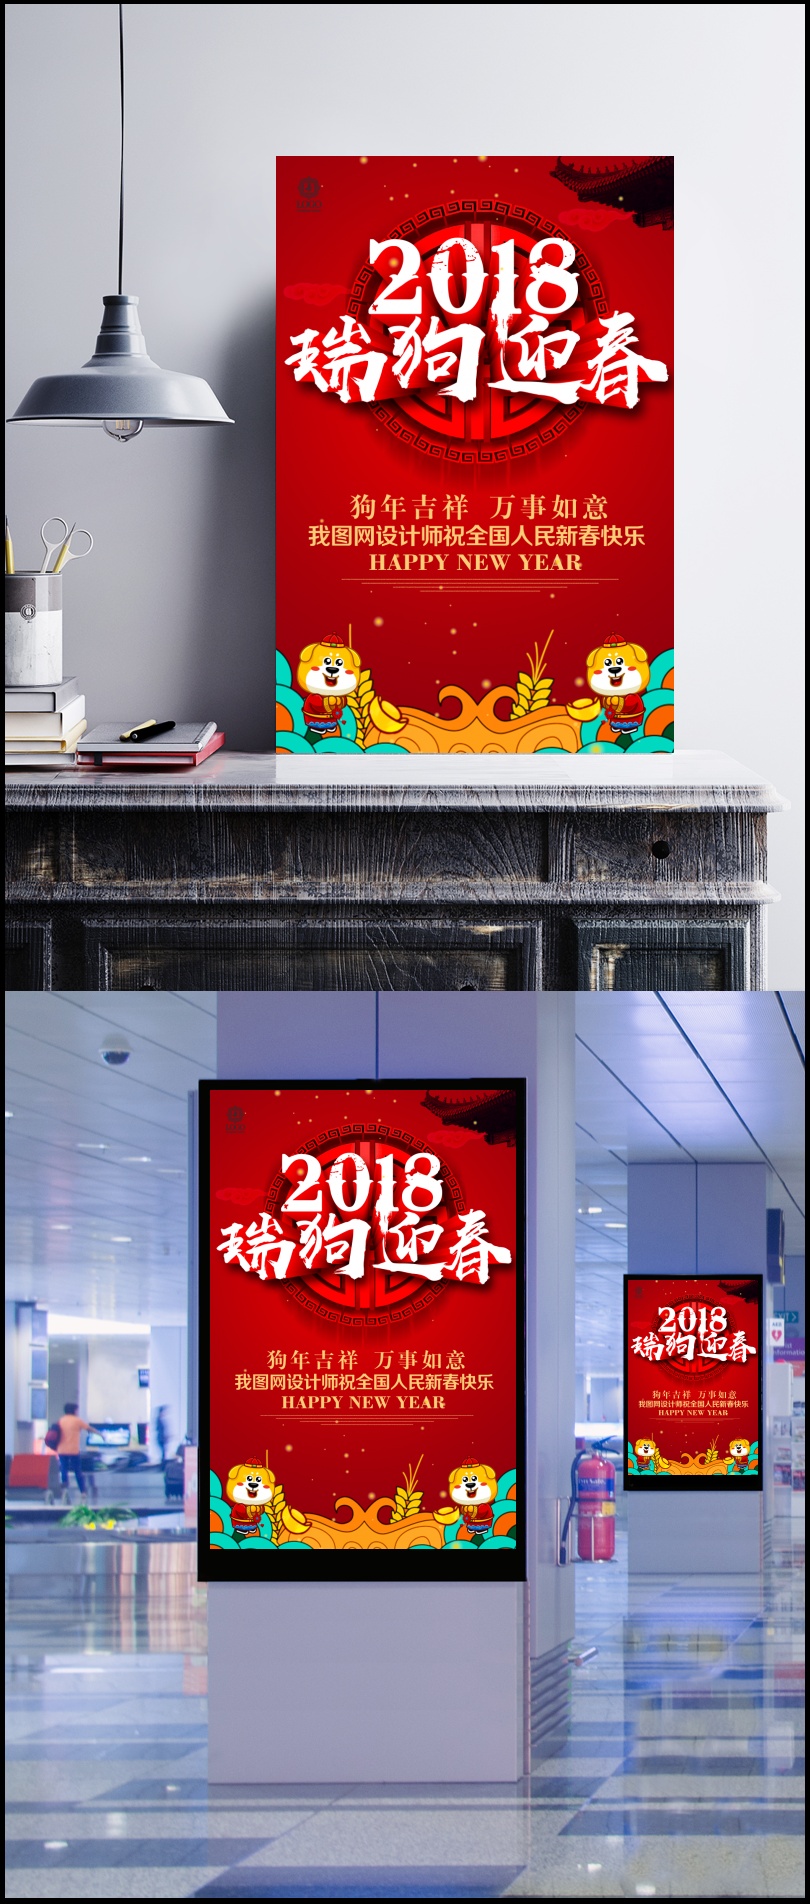 2018瑞狗迎春狗年海报